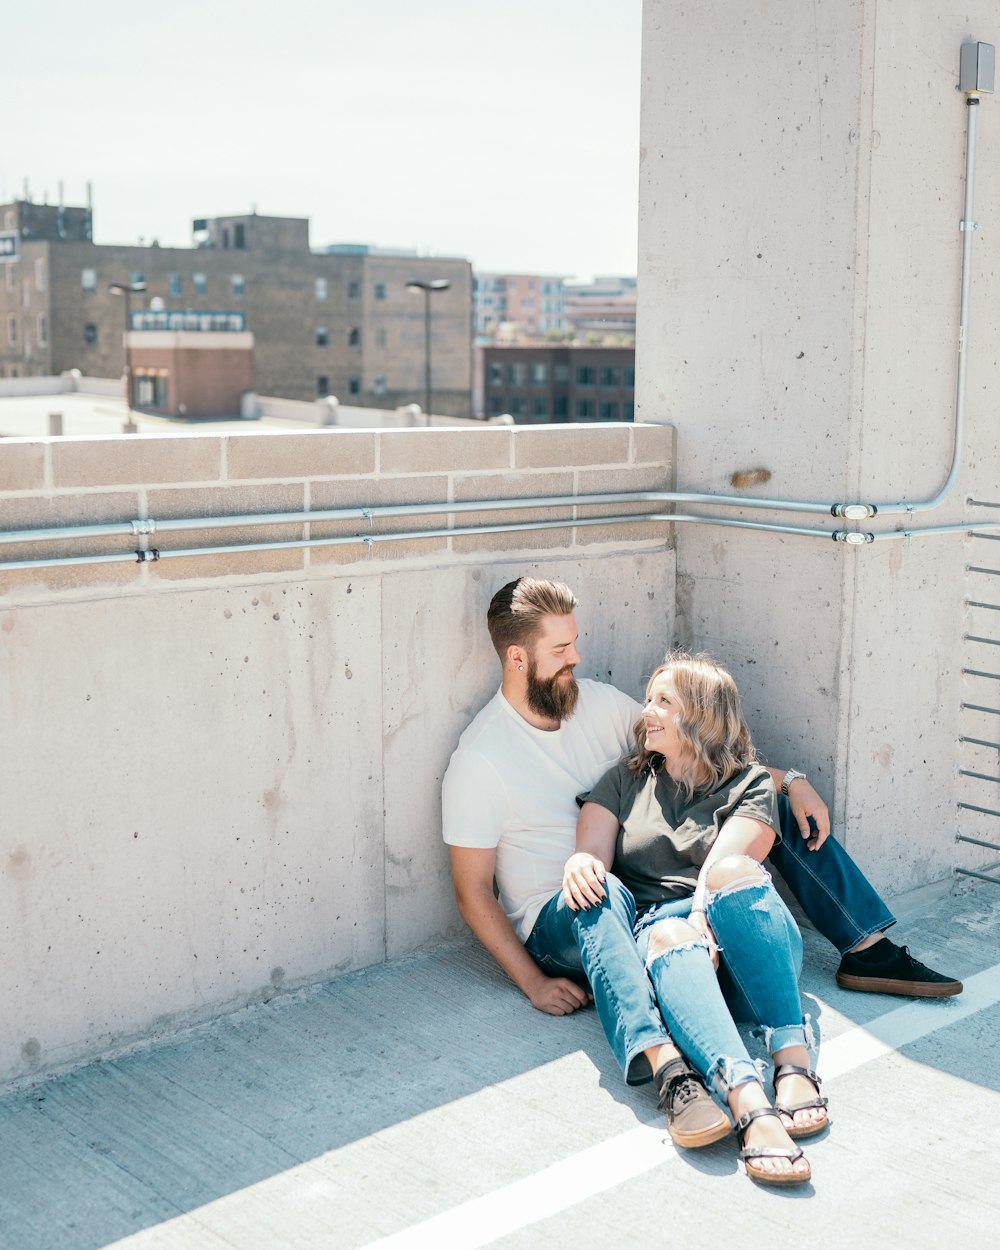 낮 동안 콘크리트 벽에 앉아 있는 남자와 여자